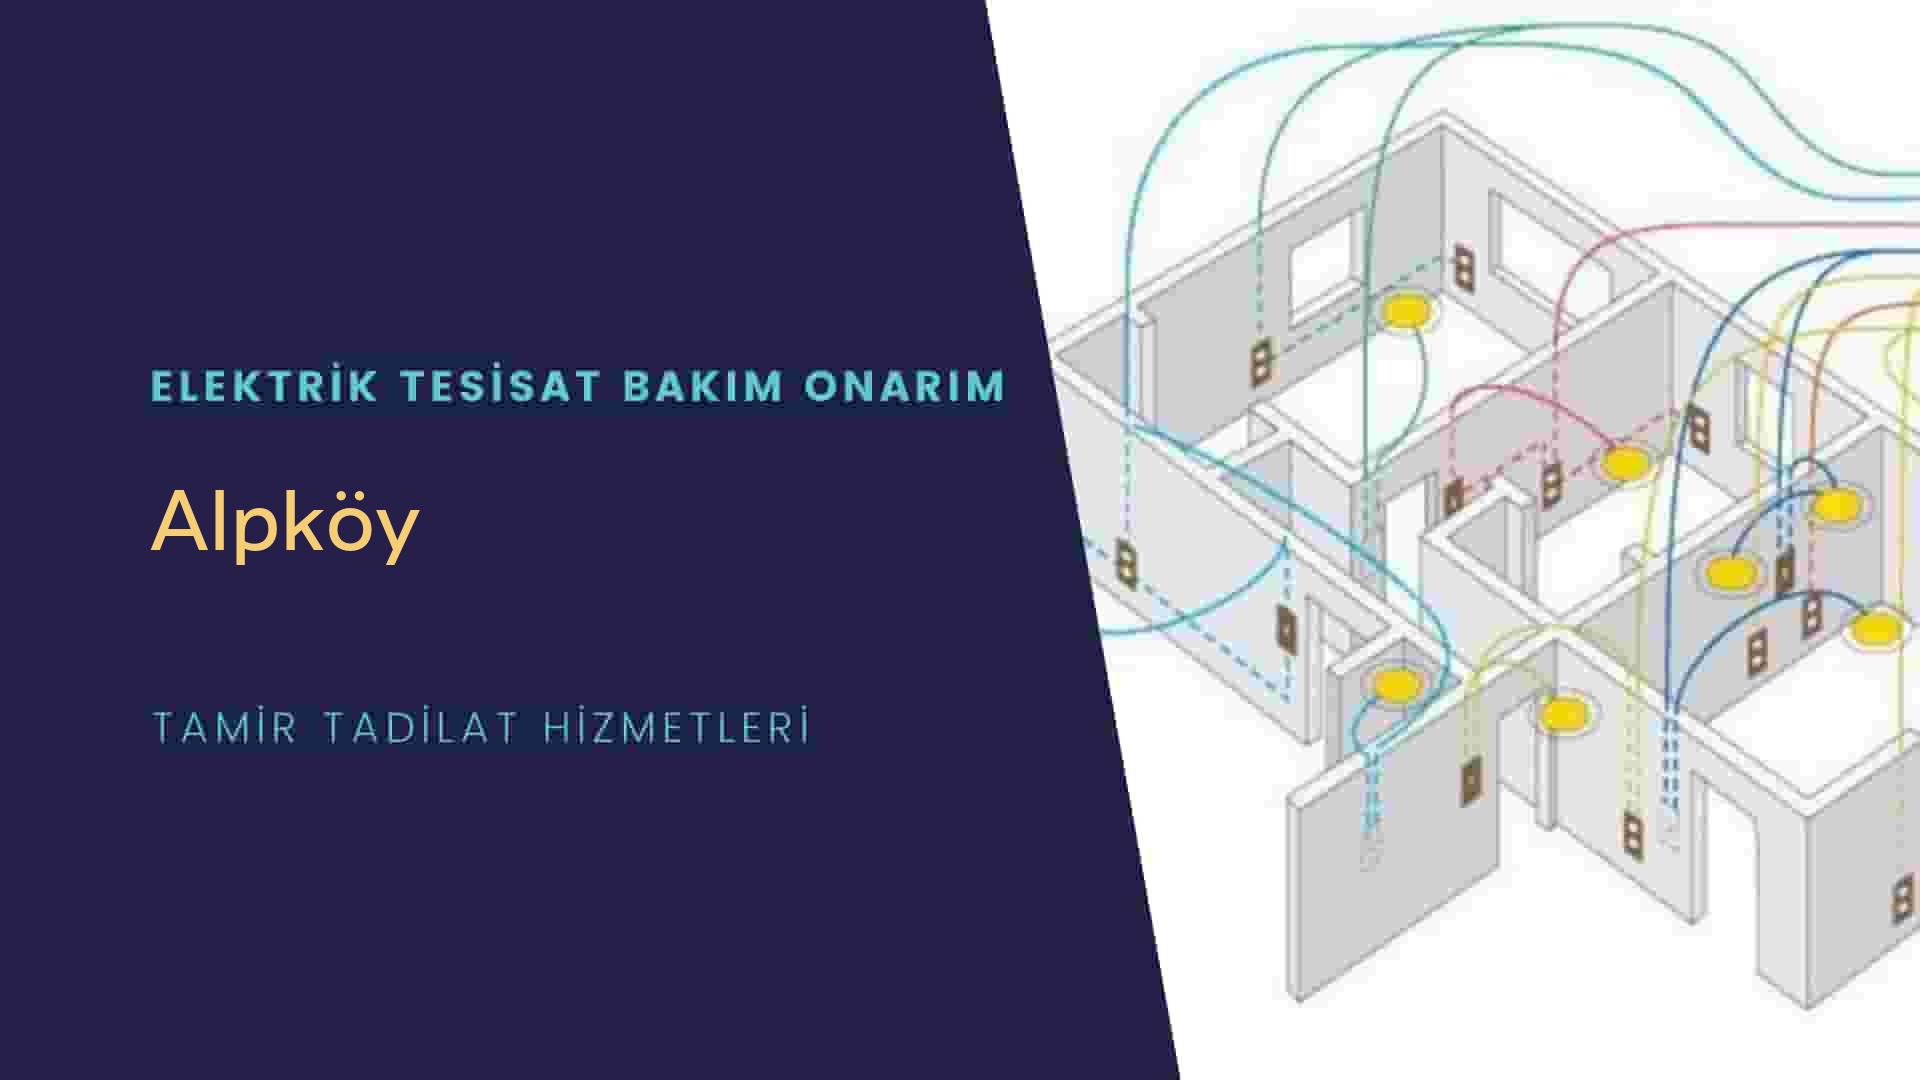 Alpköy'de elektrik tesisatı ustalarımı arıyorsunuz doğru adrestenizi Alpköy elektrik tesisatı ustalarımız 7/24 sizlere hizmet vermekten mutluluk duyar.